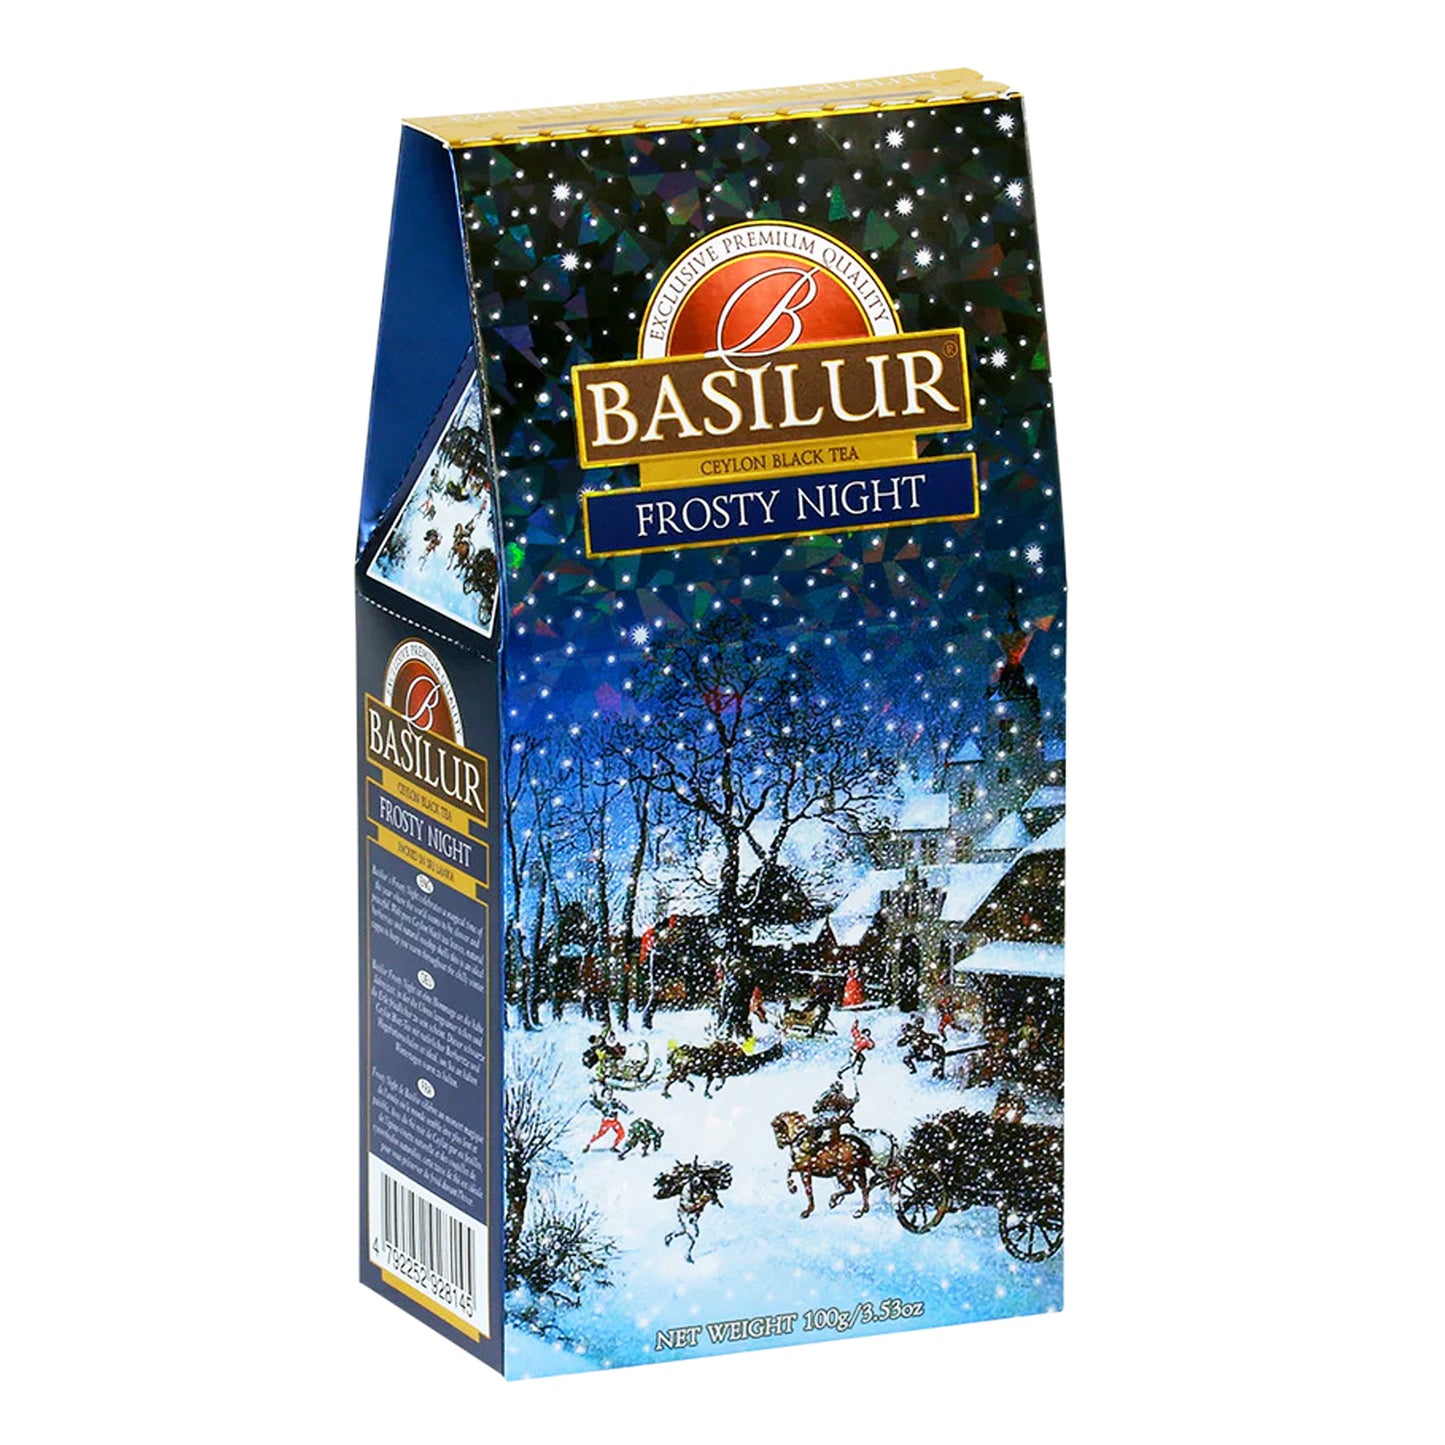 Basilur Frosty Night (100 g)